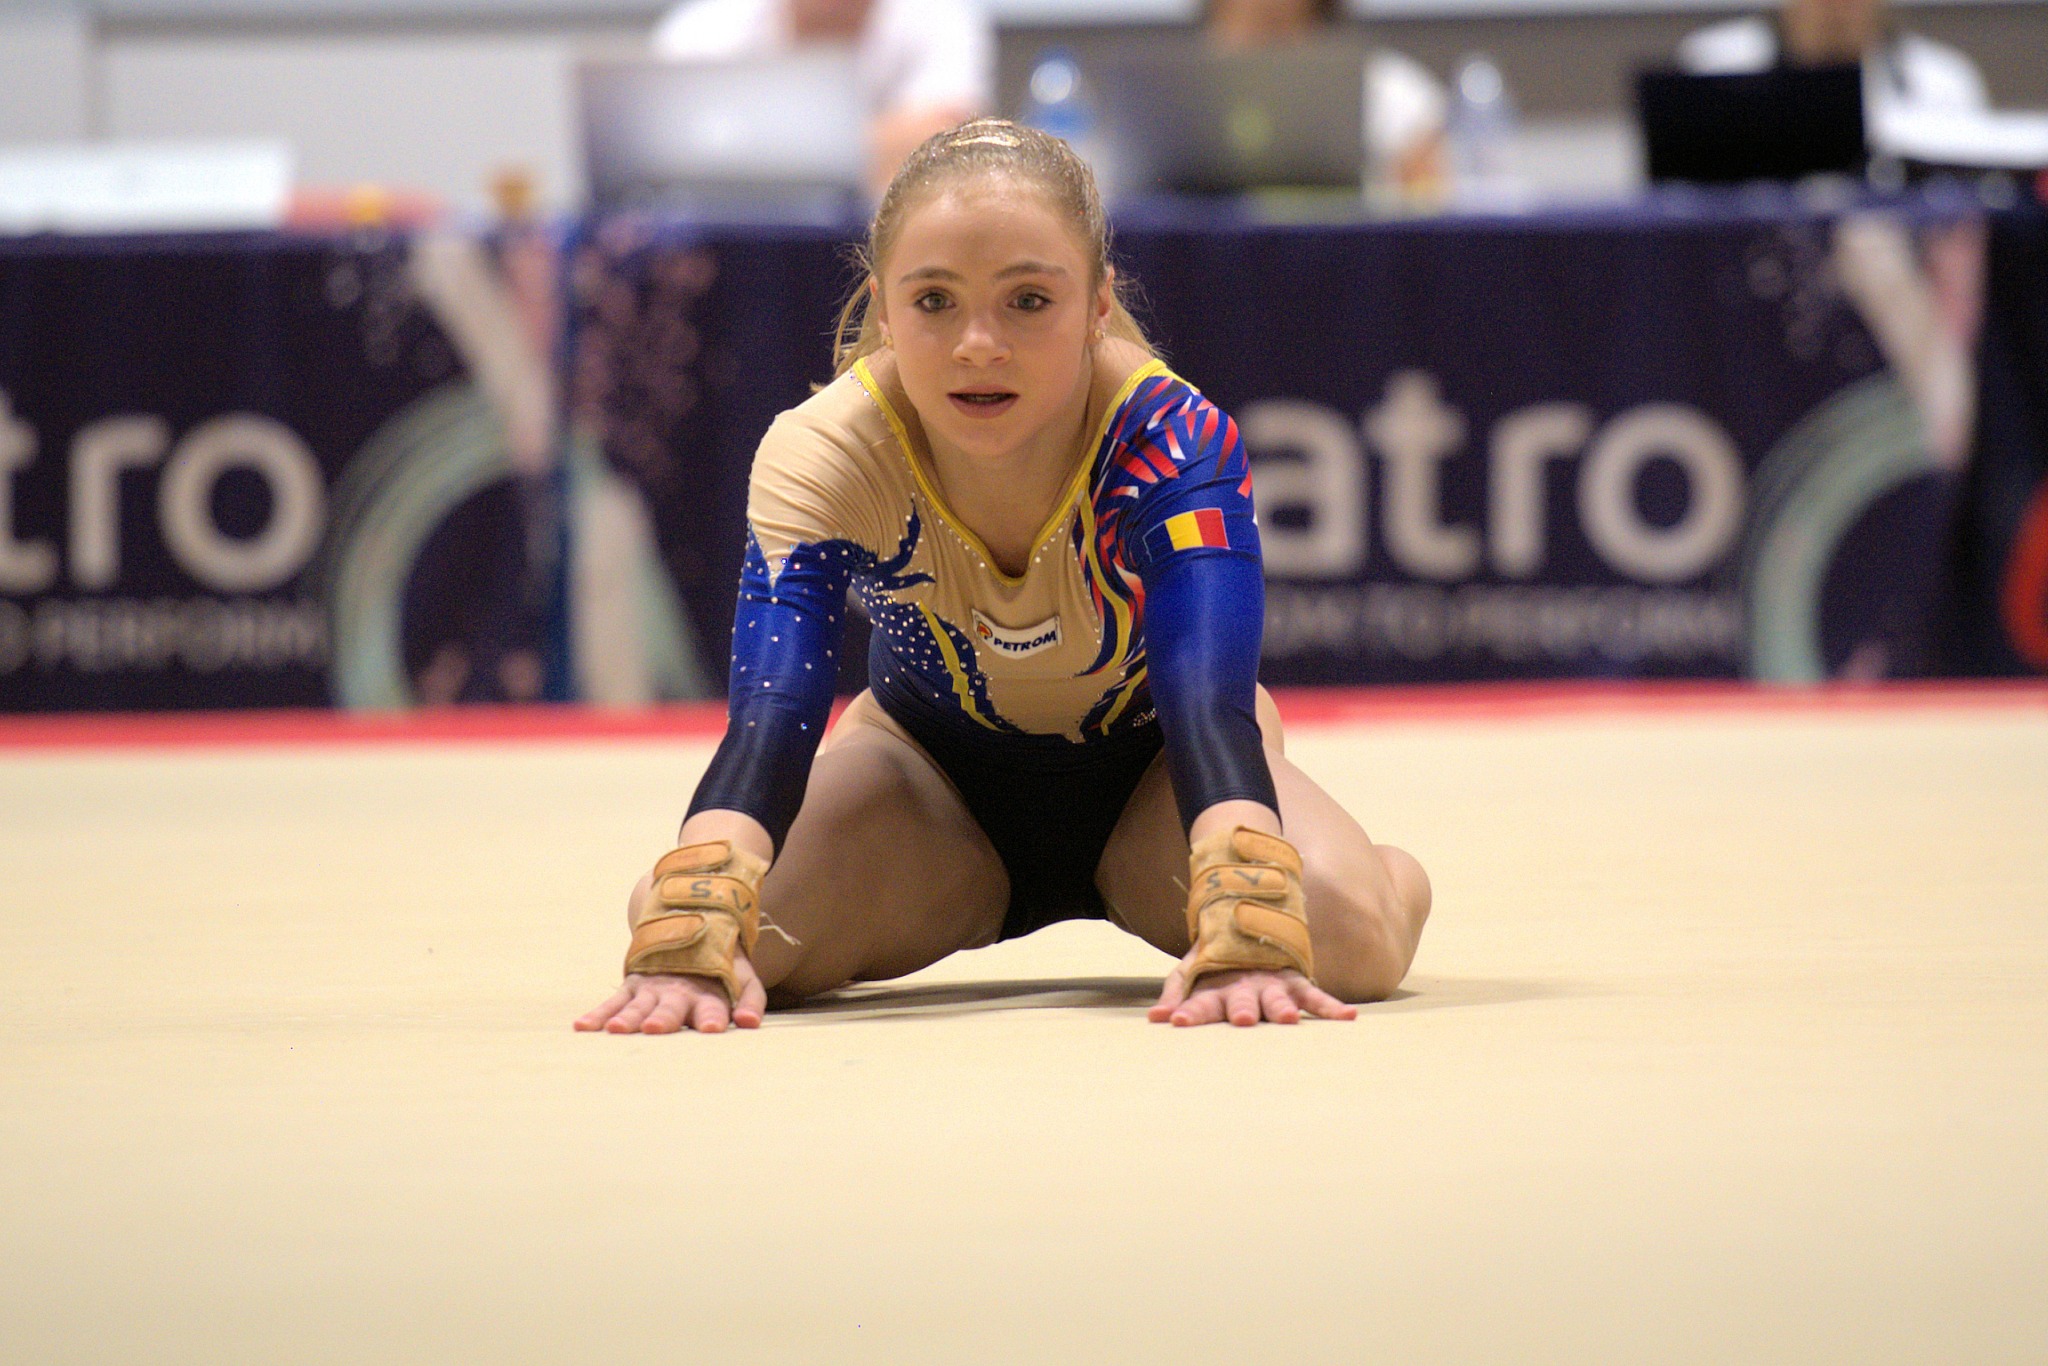 Super-performanță la gimnastică! Sabrina Voinea, două medalii de de aur, la Cupa Mondială. VIDEO